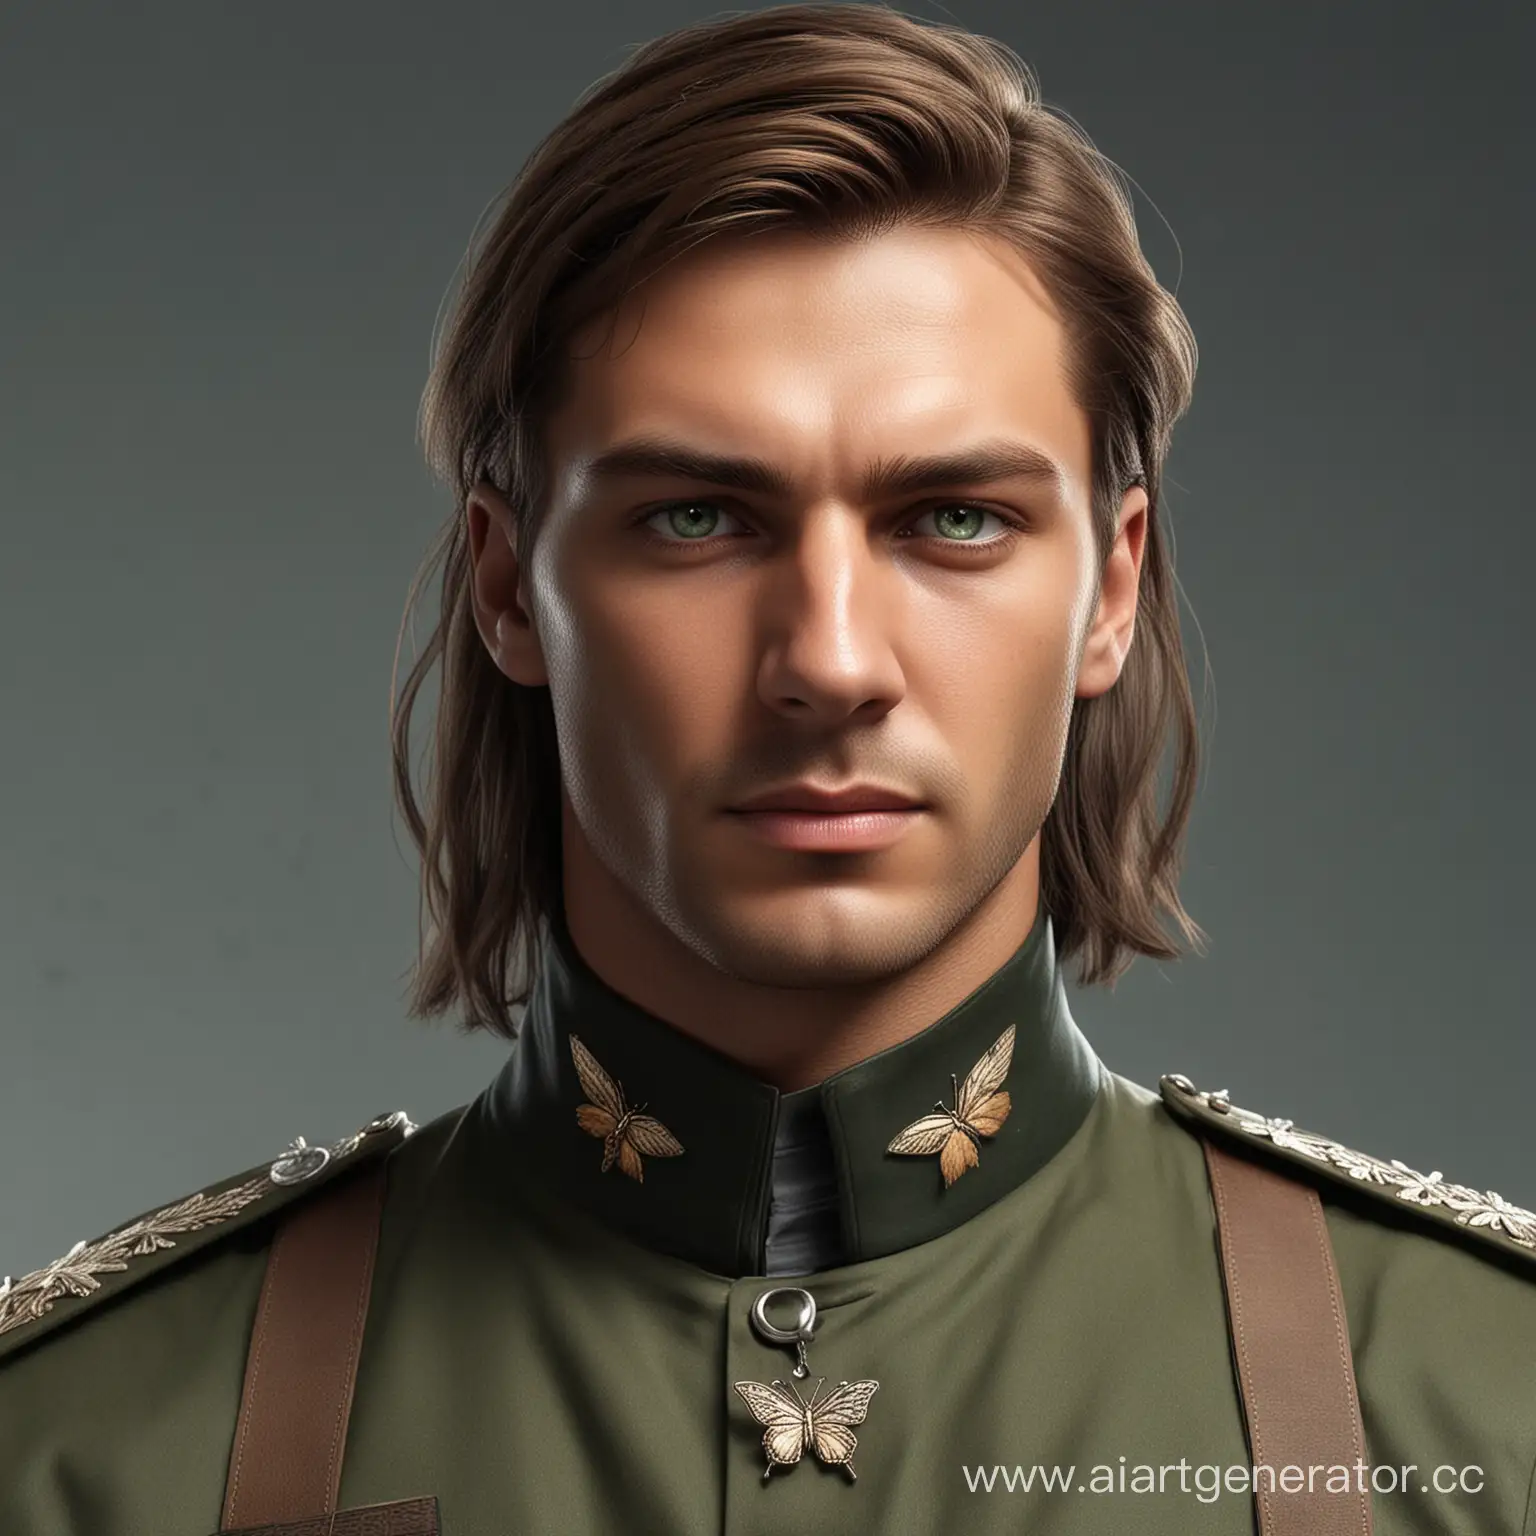 Русский мужчина, загорелая кожа, зелёные глаза, длинные карие волосы, с заколкой бабочкой. Одет в военную форму как из игры Call of duty